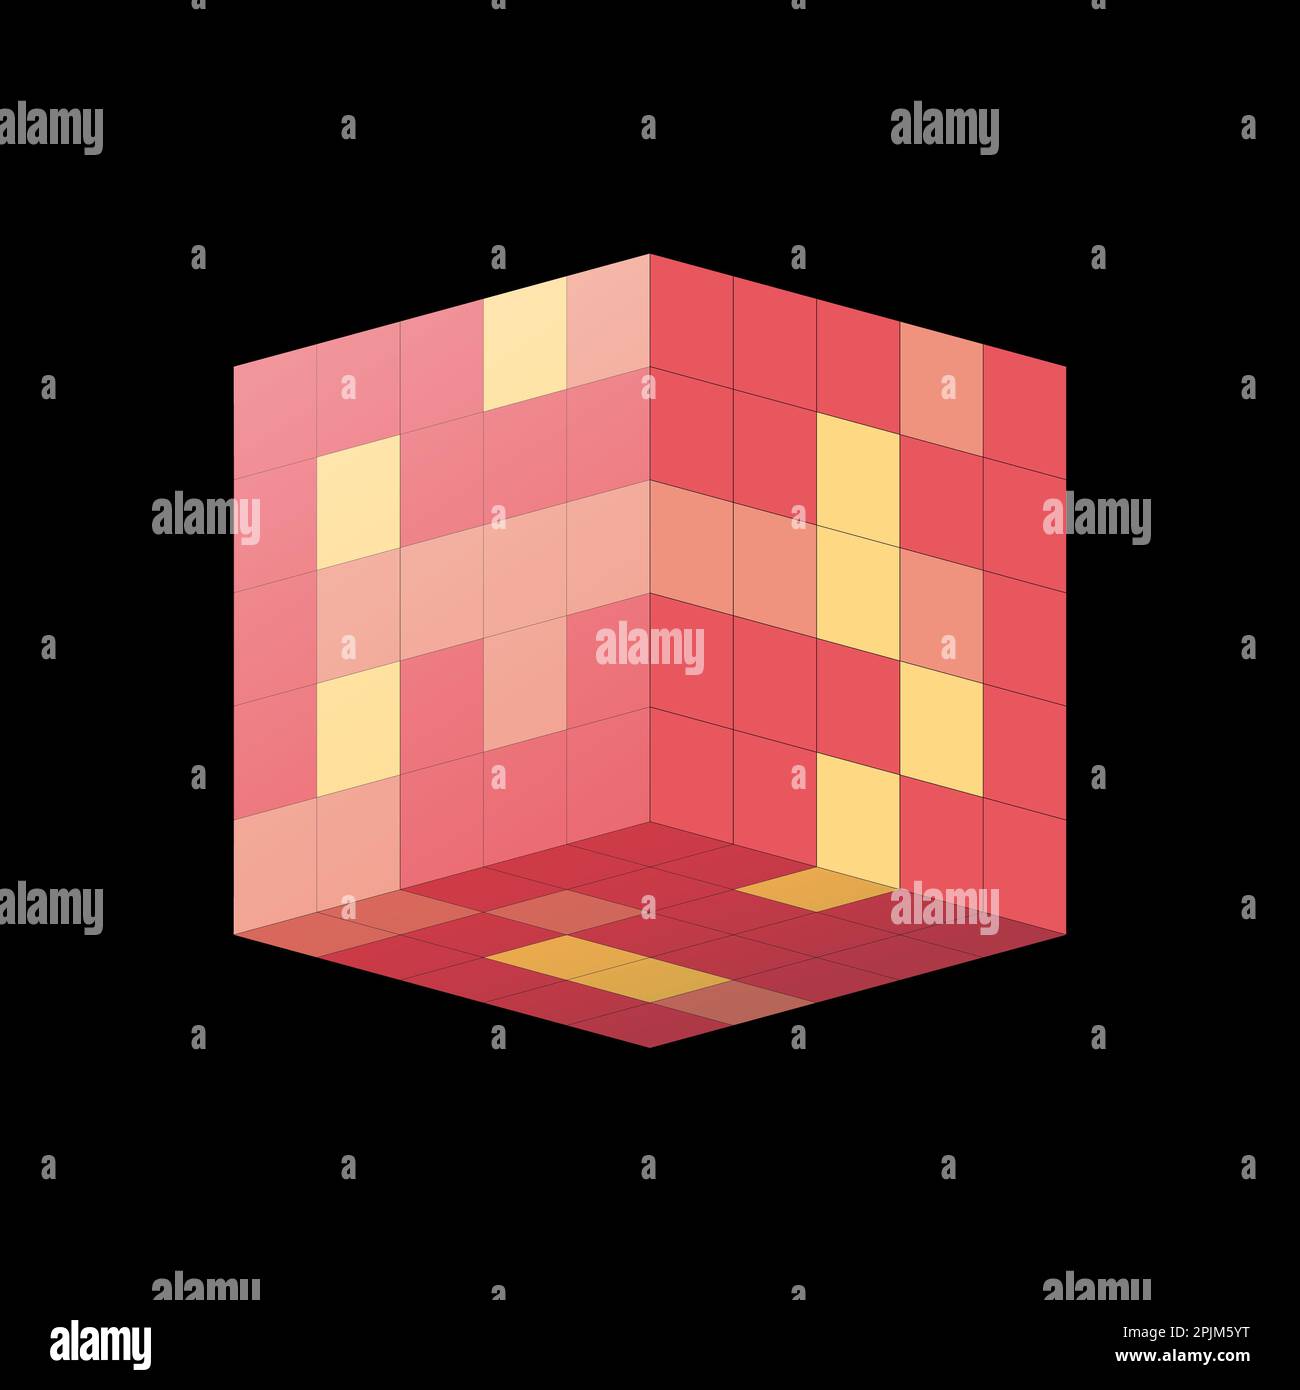 Cube isometrische mit roten und gelben Quadrate. Geometrische design pattern Konzept für Banner, Poster. Grafik Design Konzept. Cube Form. lat Vektor illu Stock Vektor